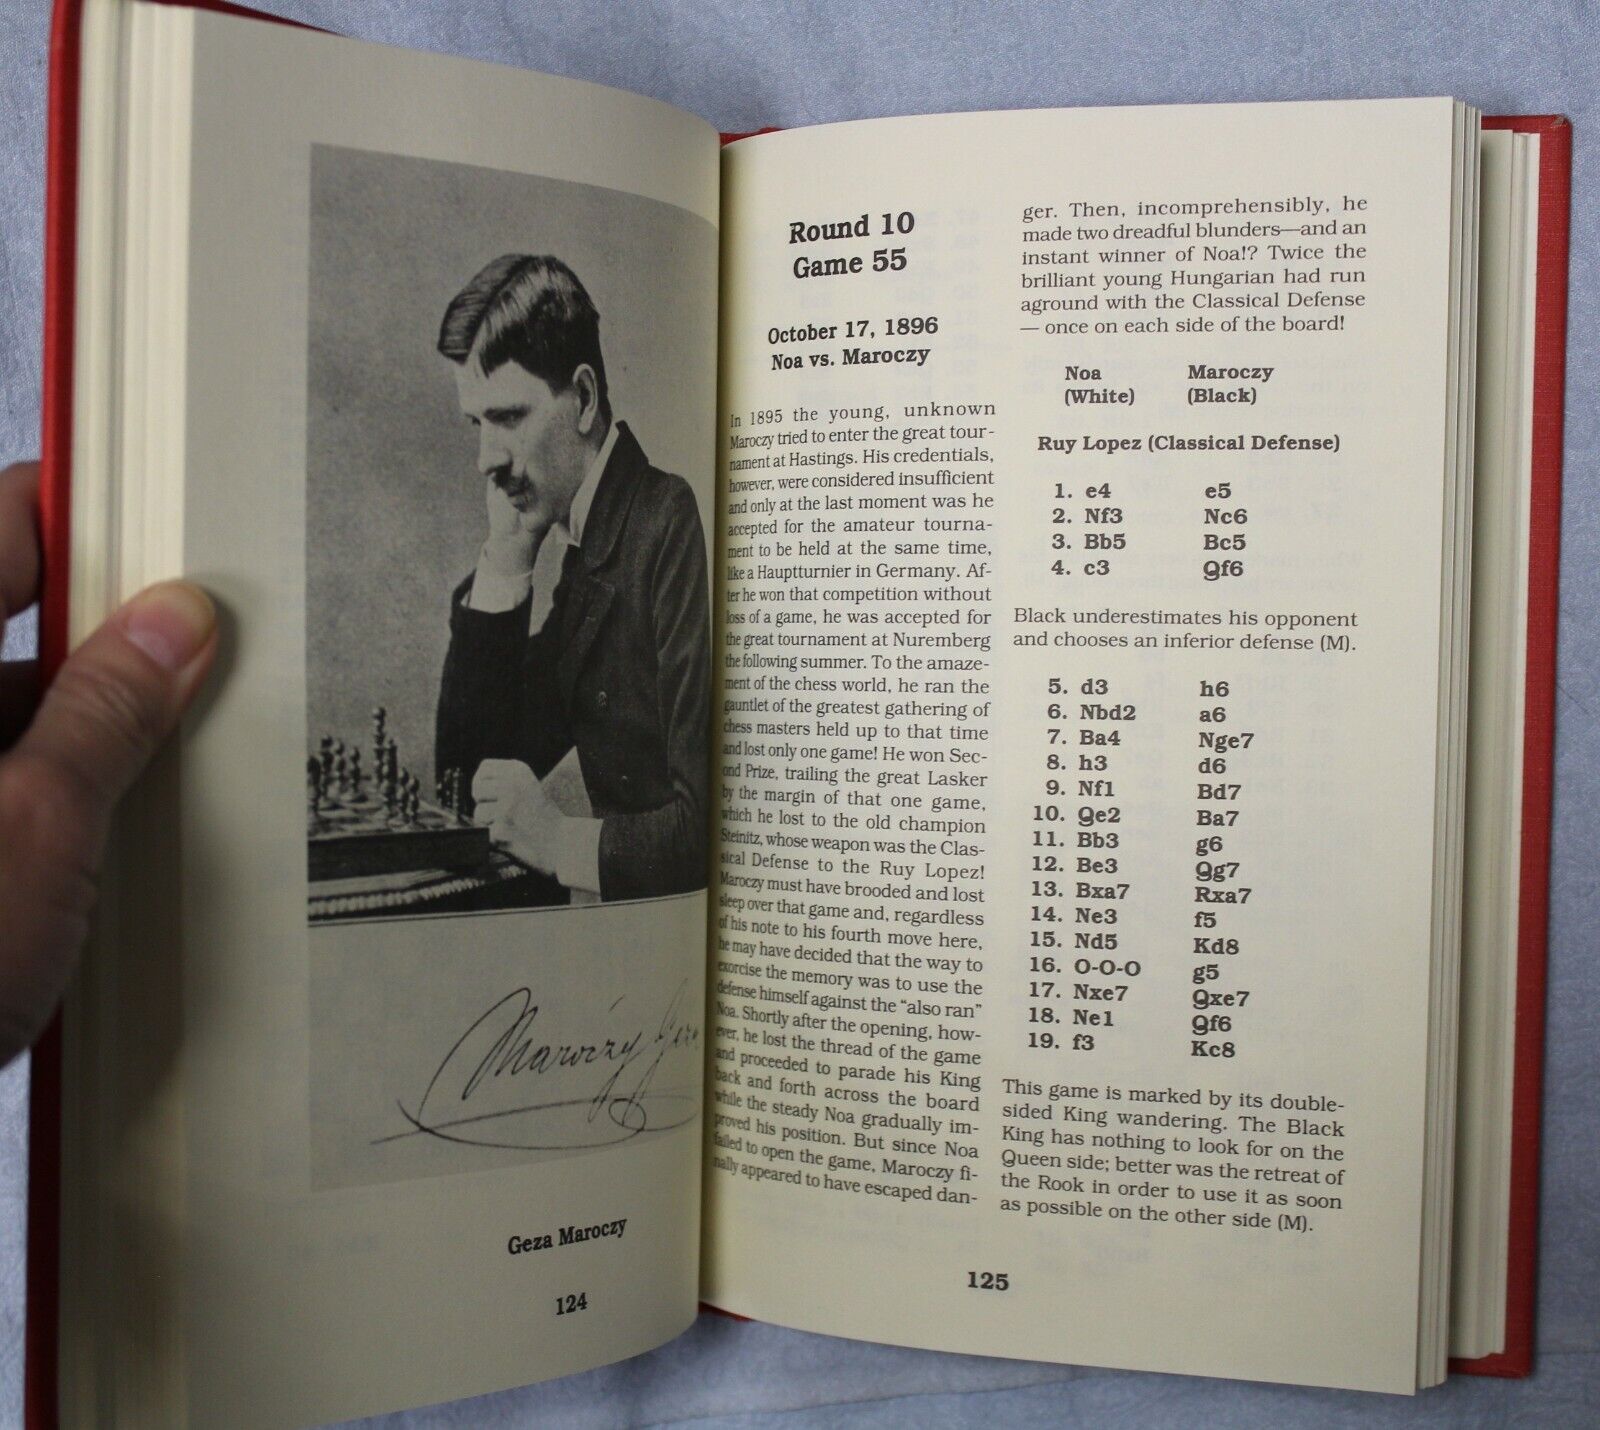 11059.Chess book: Budapest International Chess Tournament in Hungary 1896,Yorklyn,1994